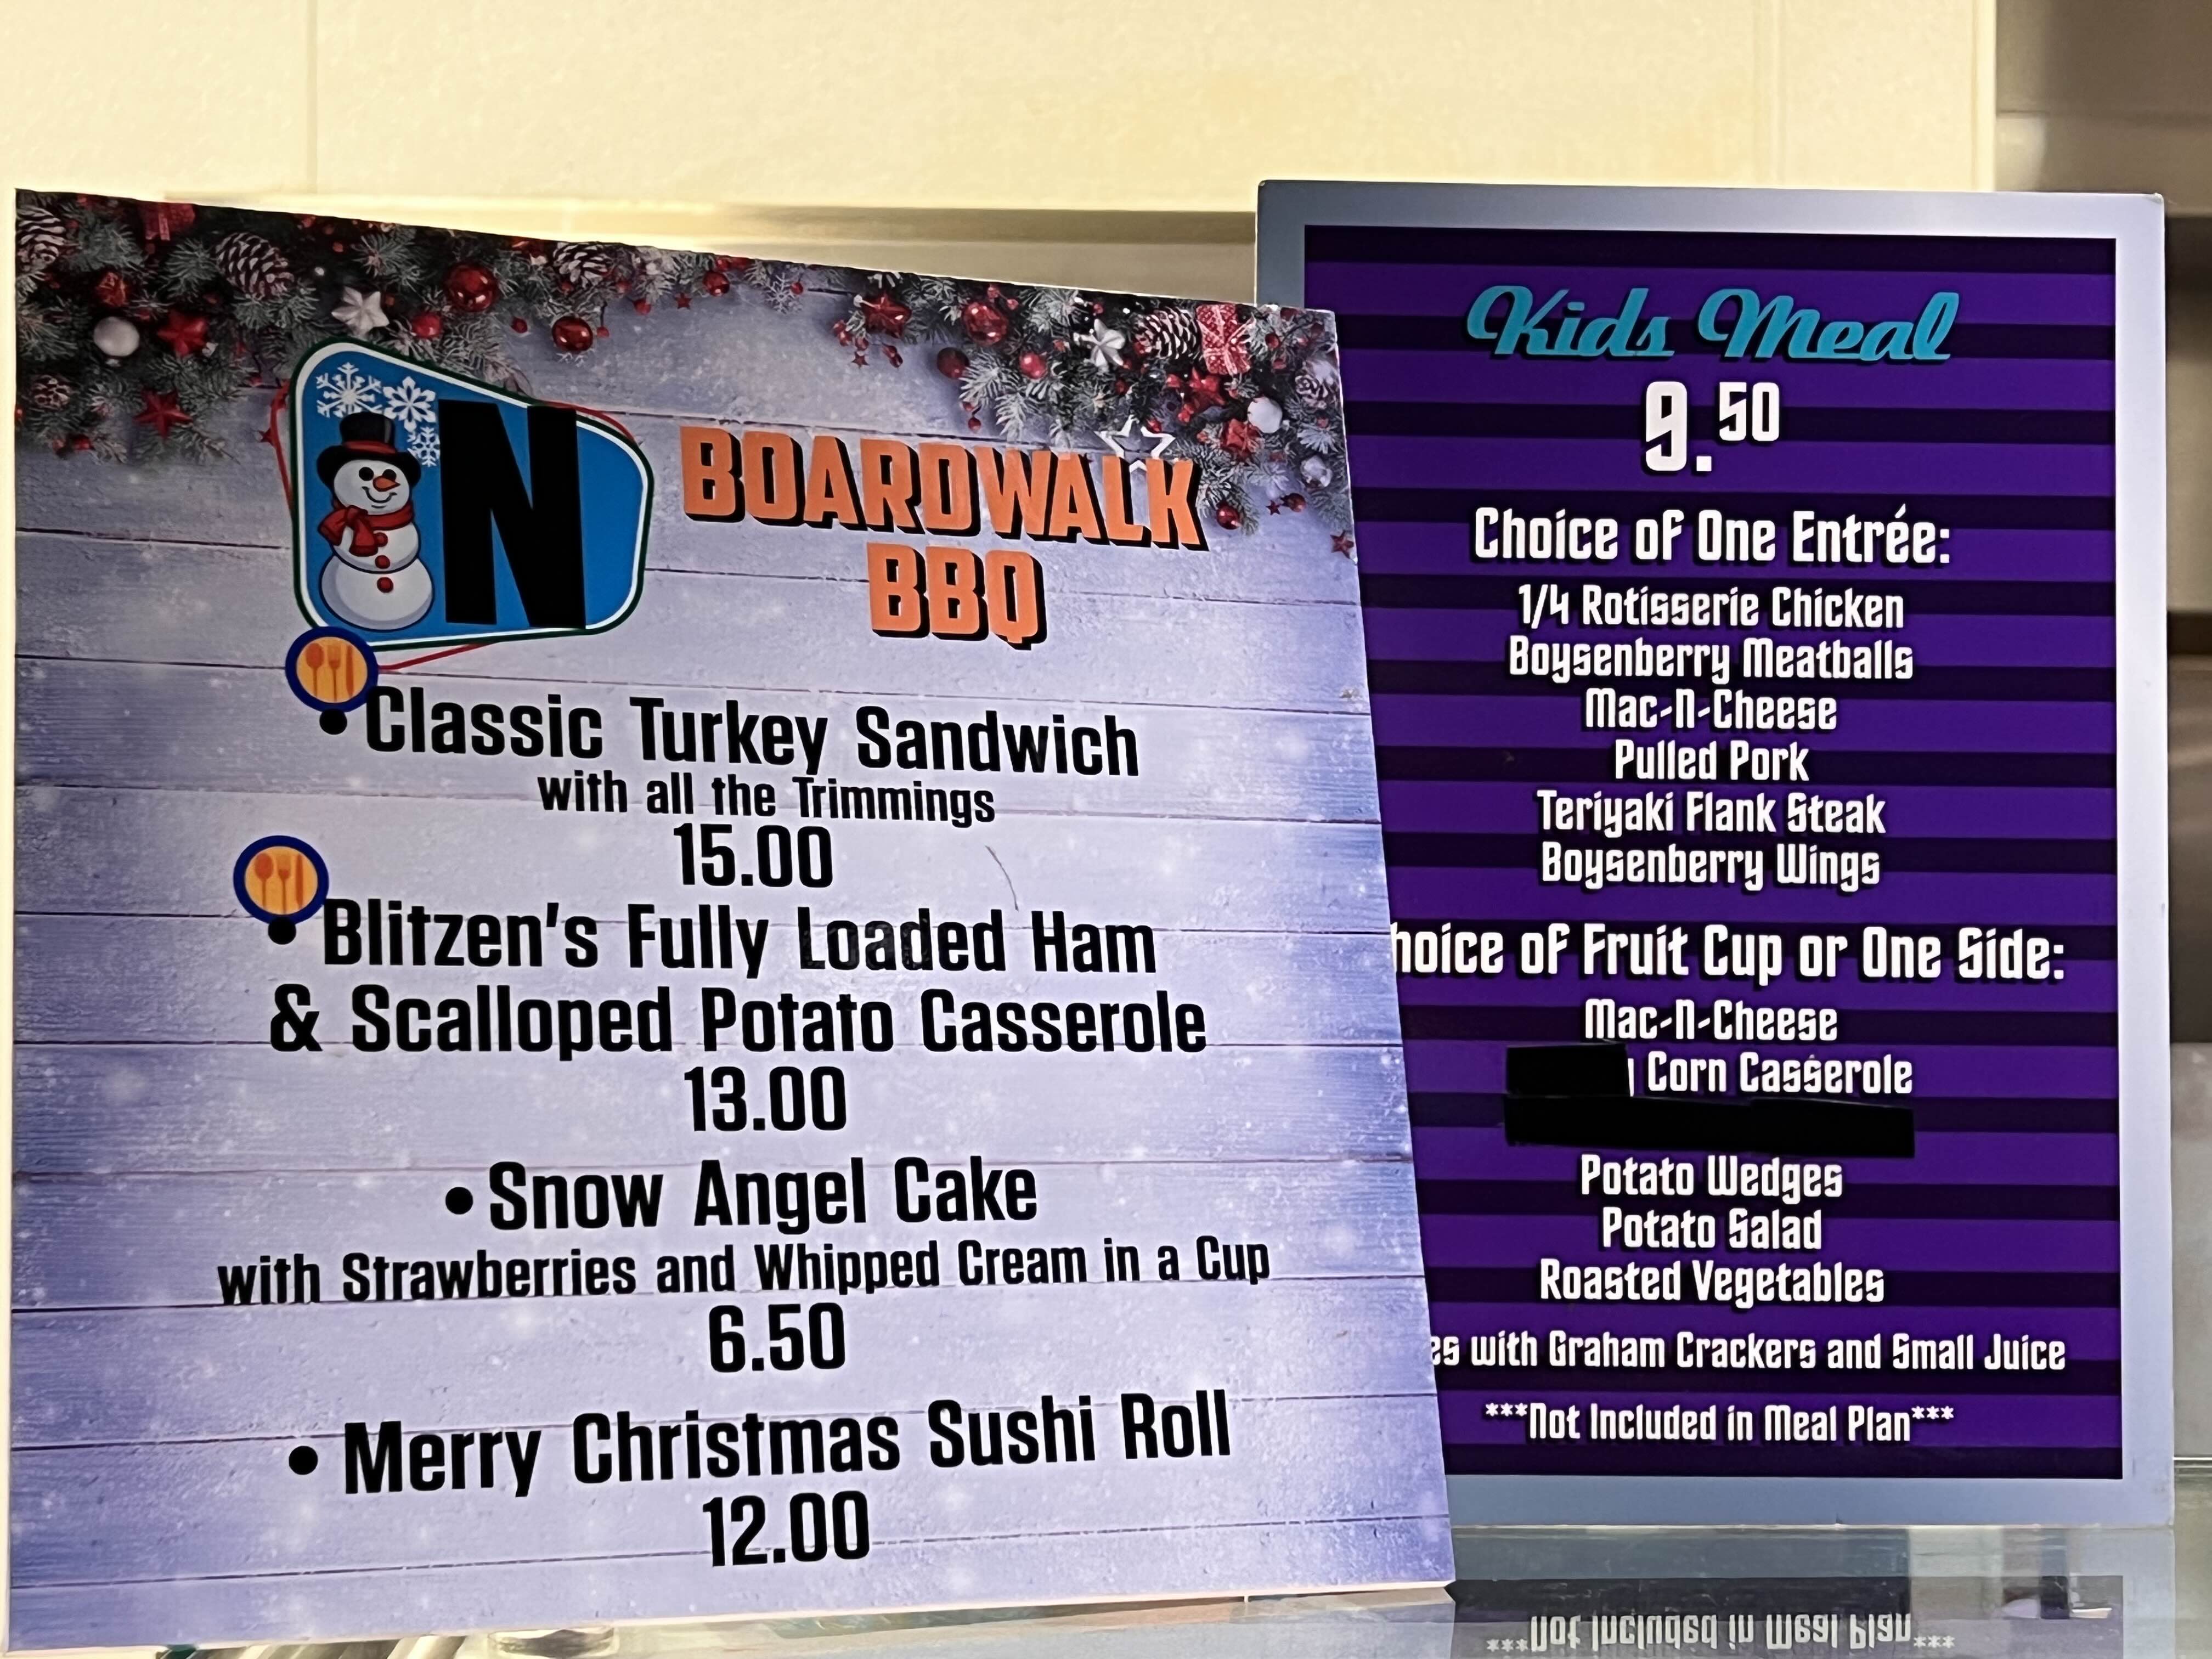 Boardwalk BBQ 메리팜 메뉴입니다.